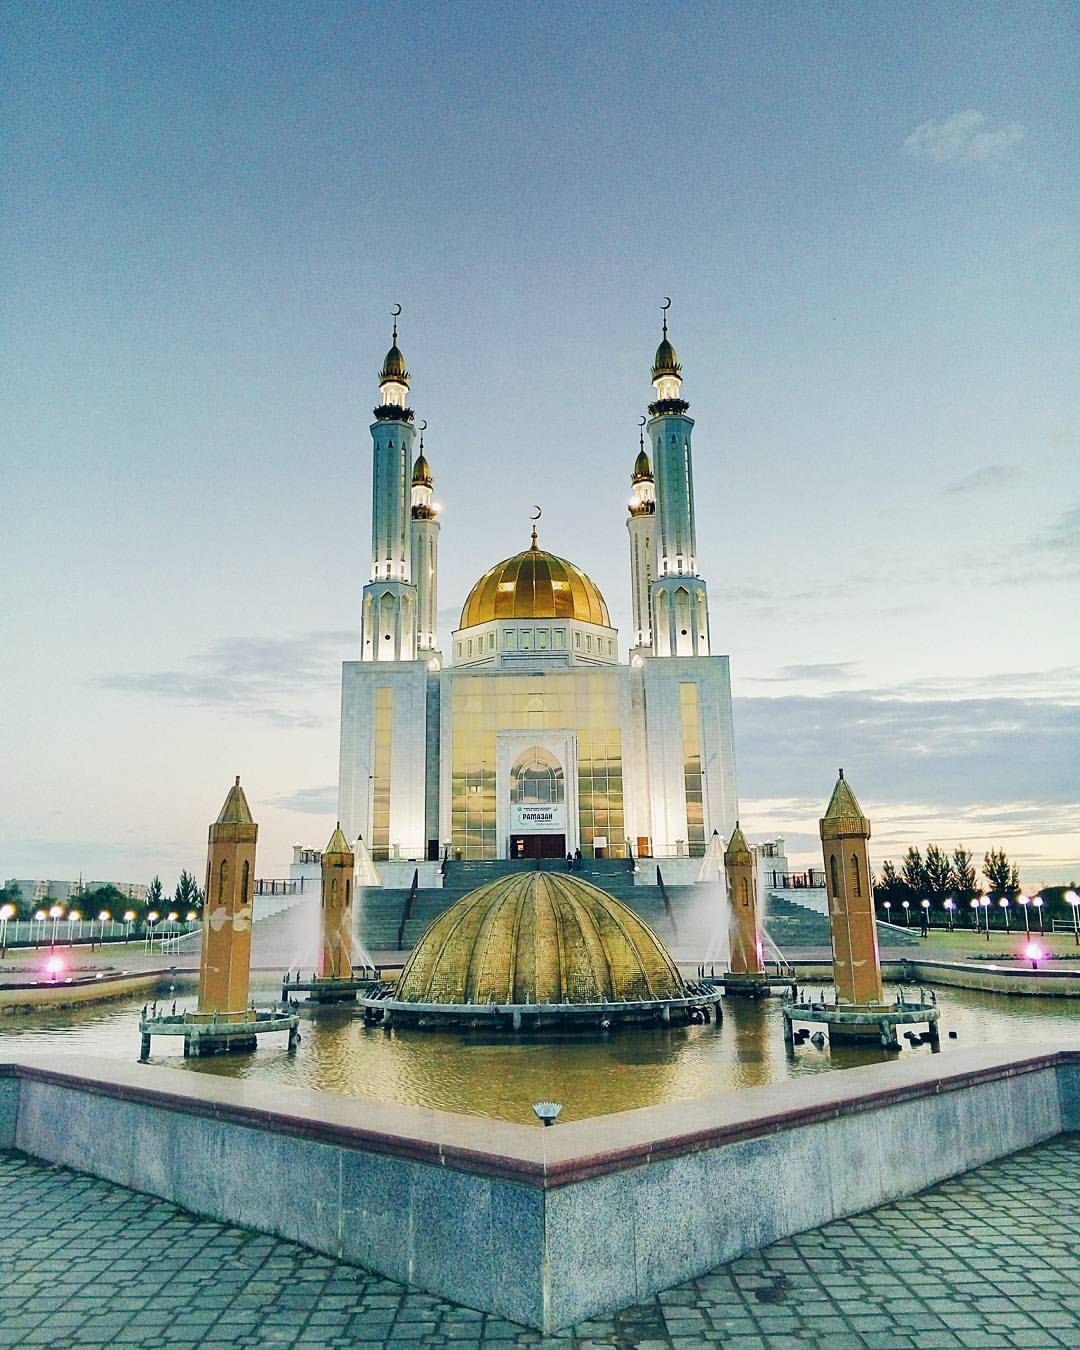 Областная центральная мечеть «Нур Гасыр»